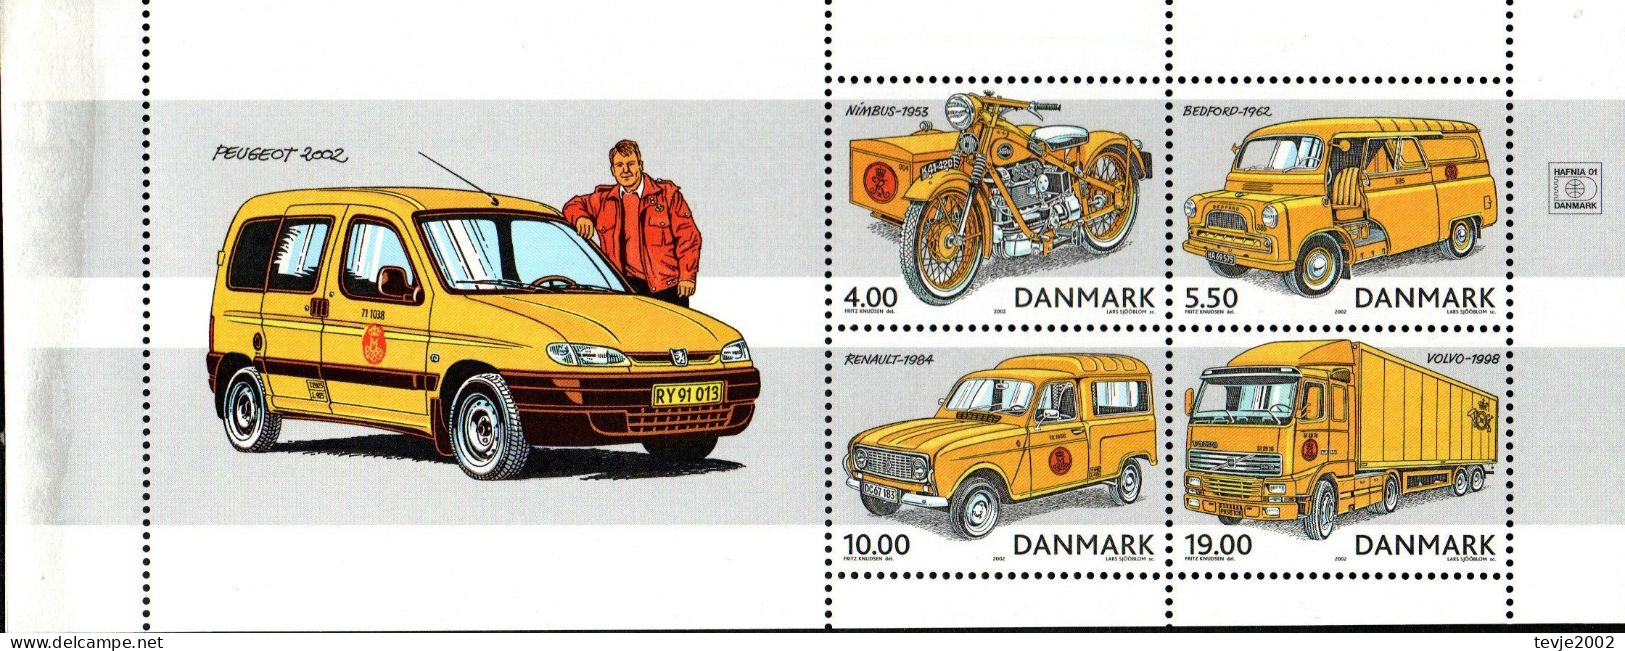 Dänemark 2002 - Mi.Nr. 1312 - 1315 (aus Markenheftchen) - Postfrisch MNH - Post - Nuovi